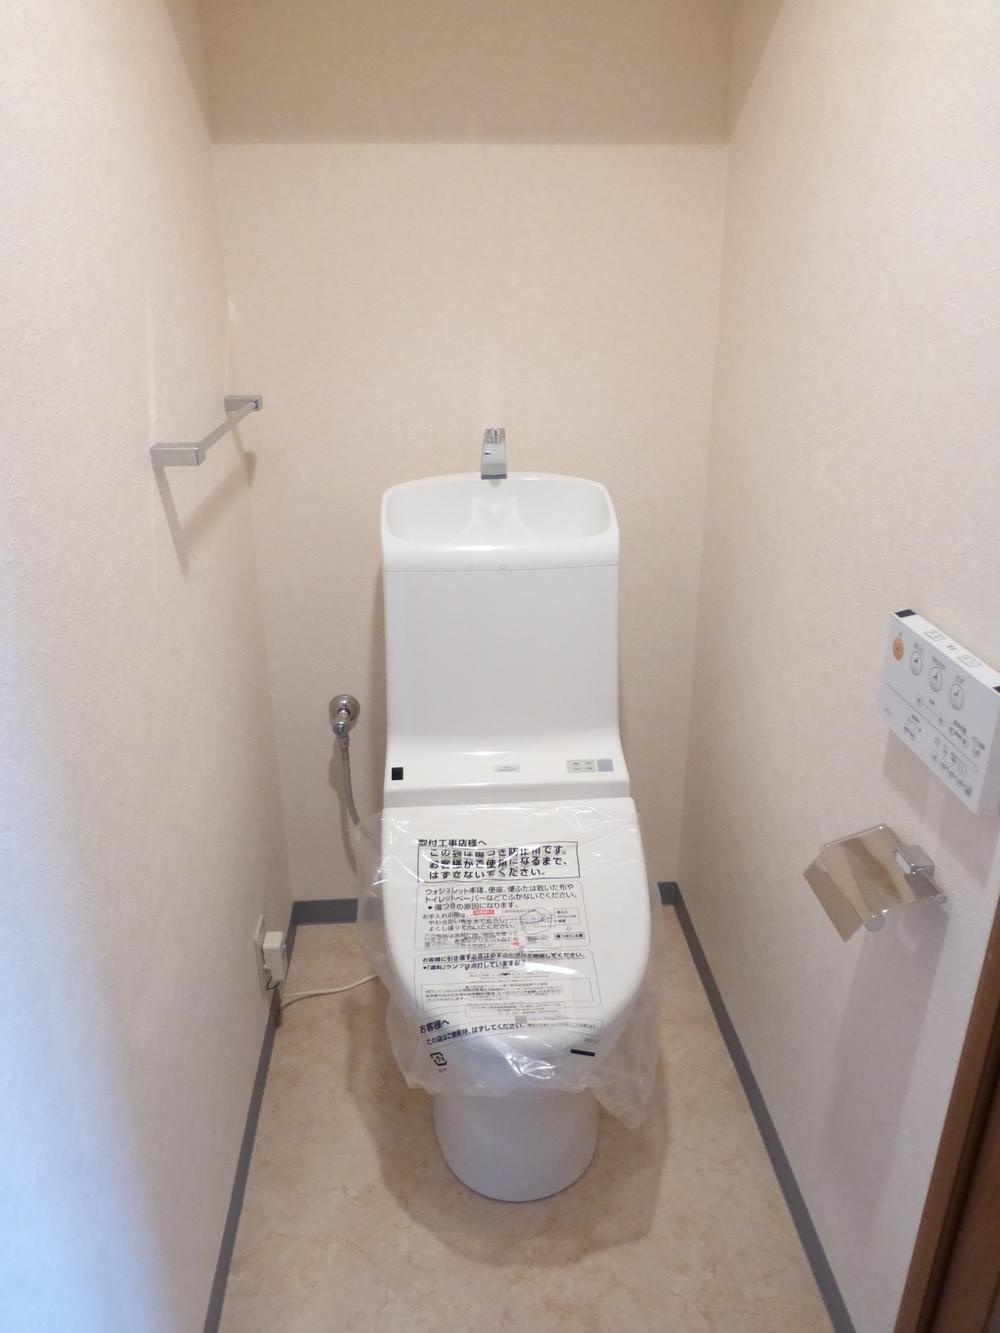 Toilet. Indoor (October 21, 2013) Shooting